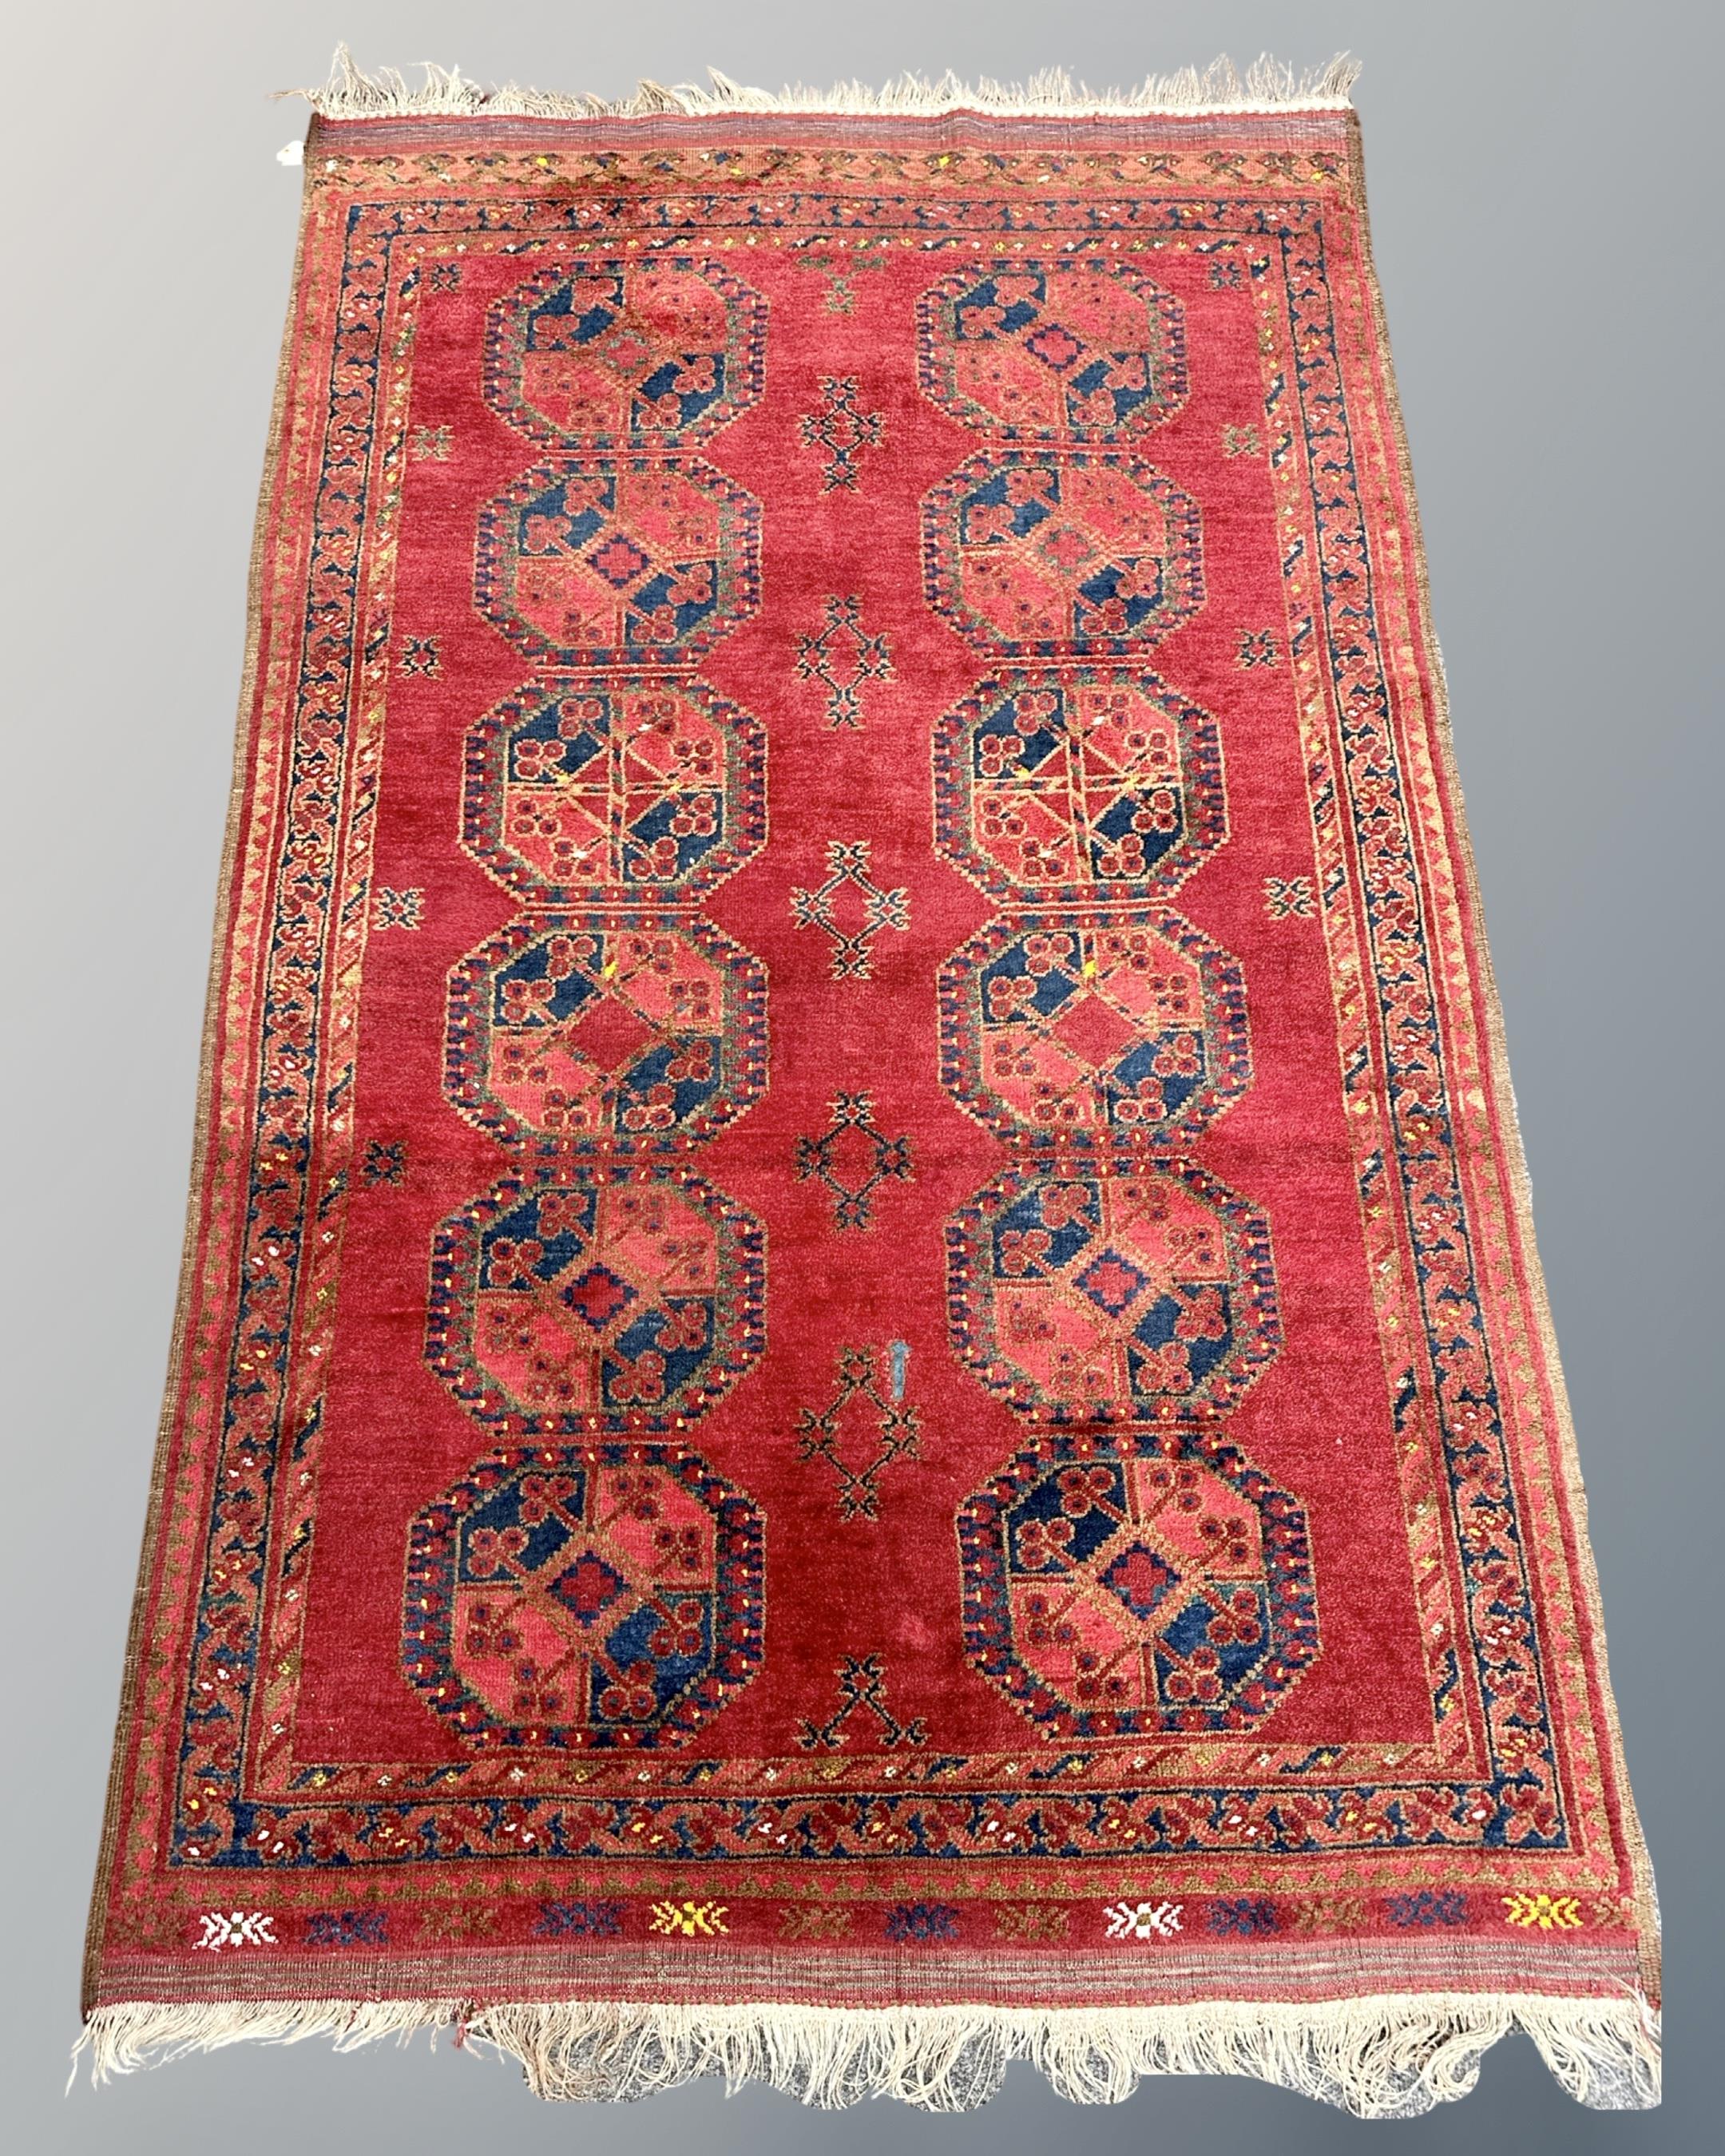 A Bokhara rug, Afghanistan, 128cm by 202cm.